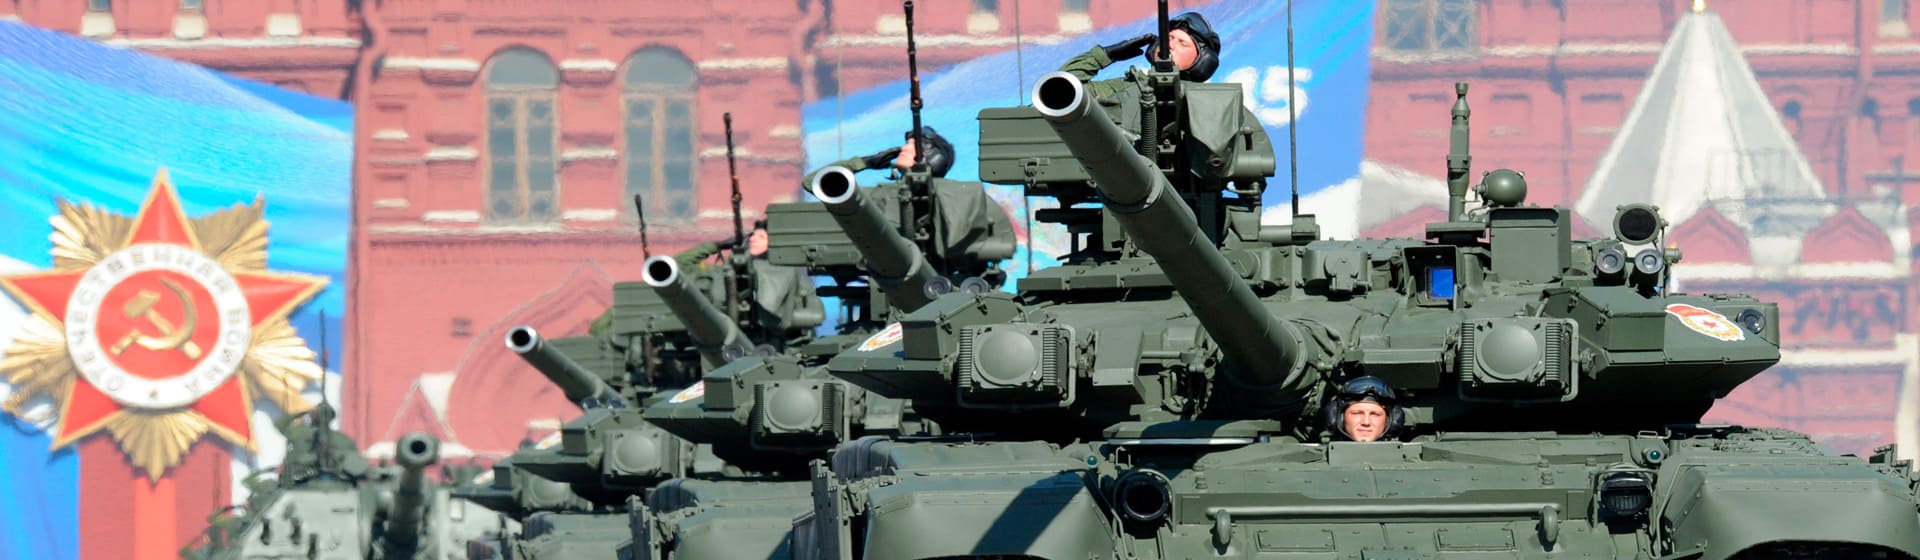 Танковые войска - Мерч и одежда с атрибутикой